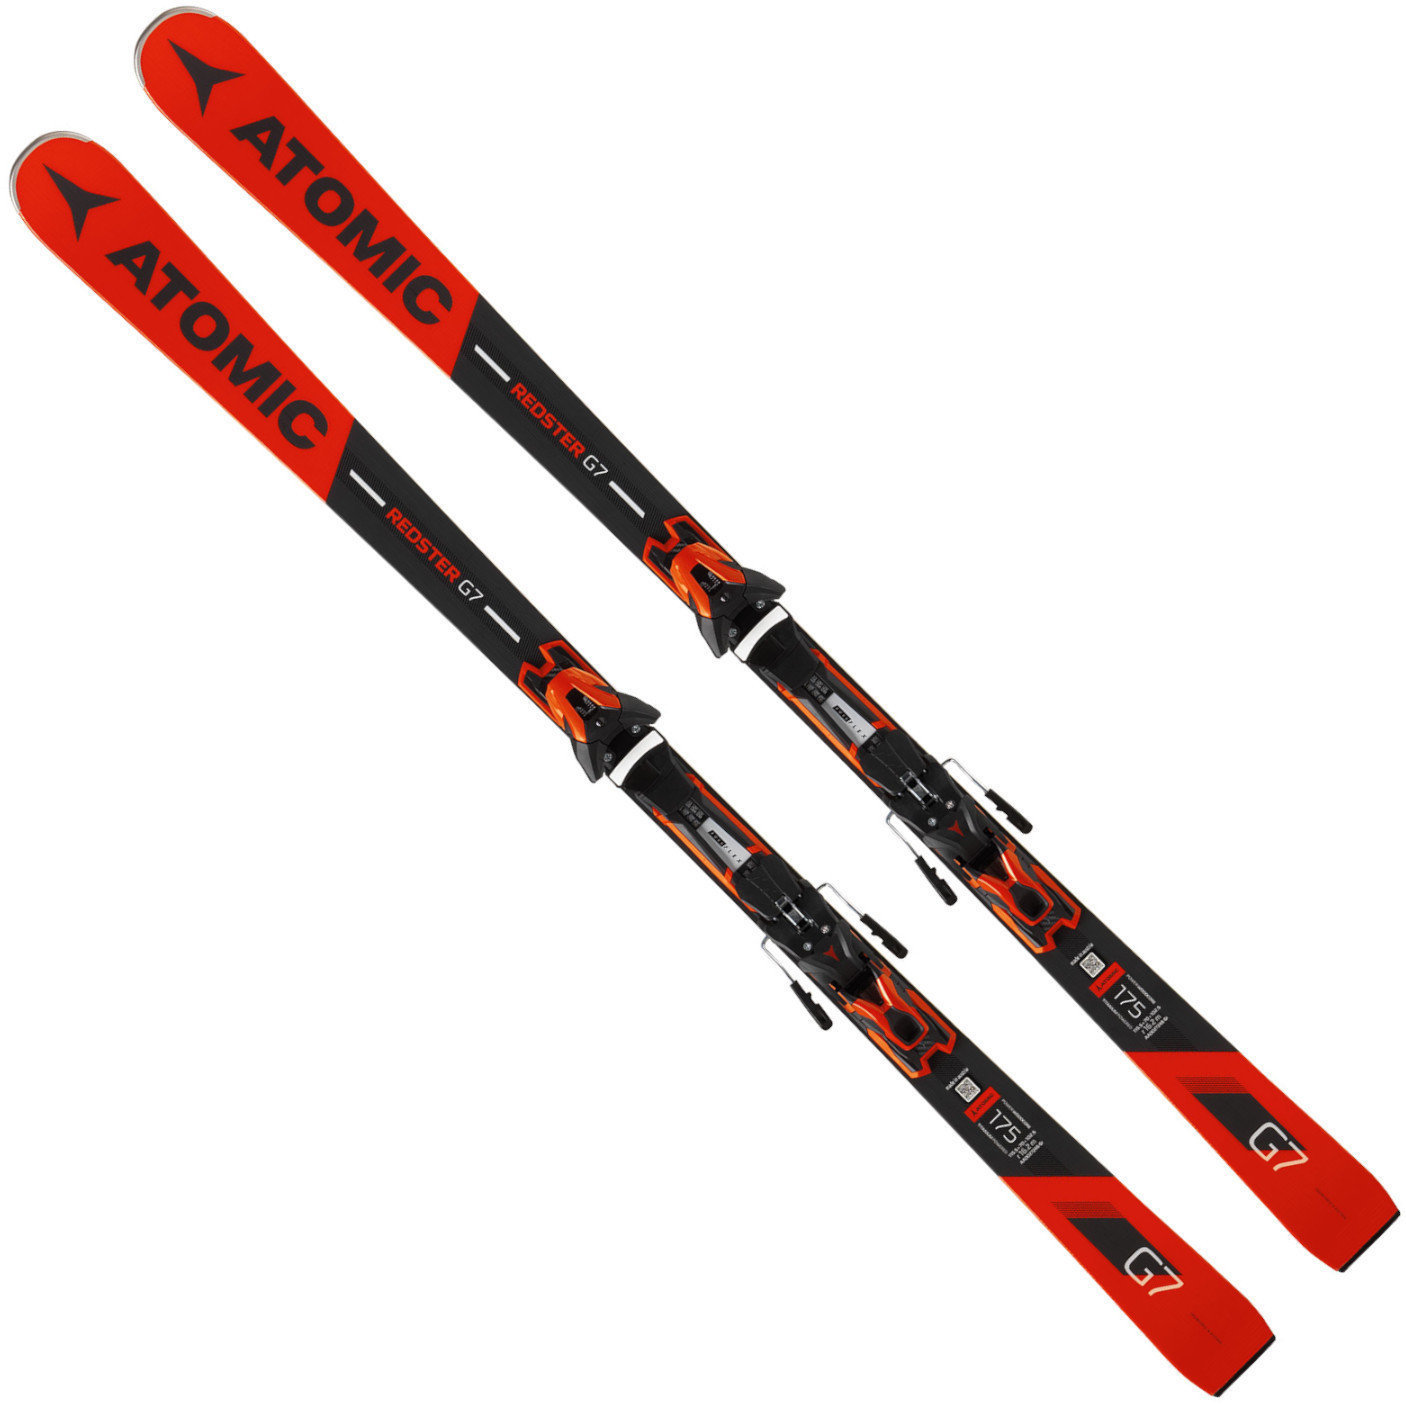 Narty Atomic Redster G7 + FT 12 GW 175 18/19 skis